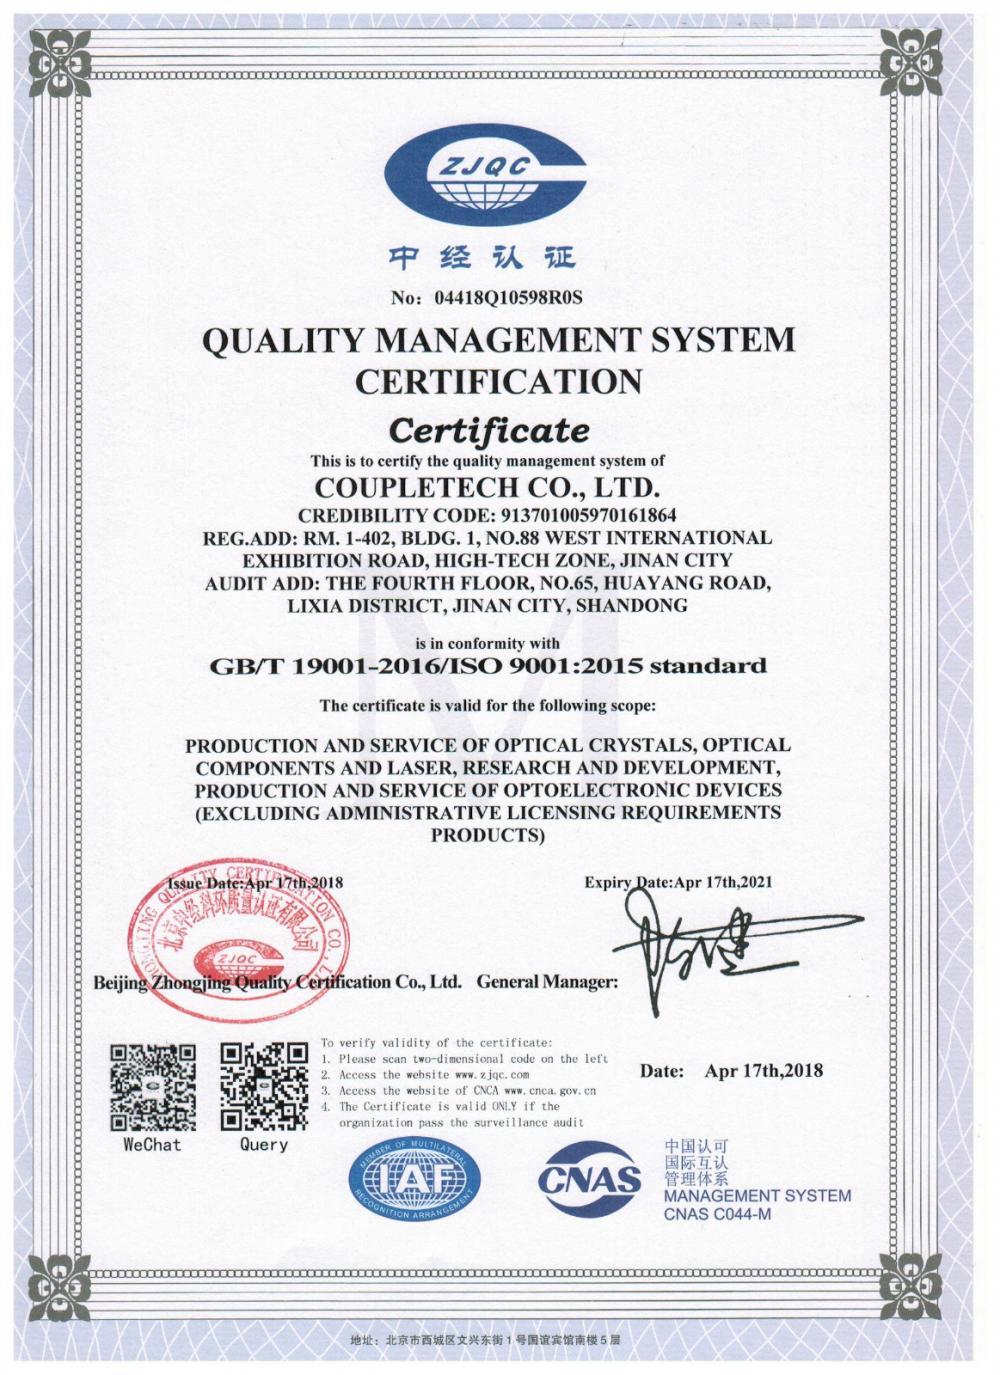 Coupletech Co., Ltd. пройшла сертифікацію: модульний кронштейн для кристалів активного контролю температури.